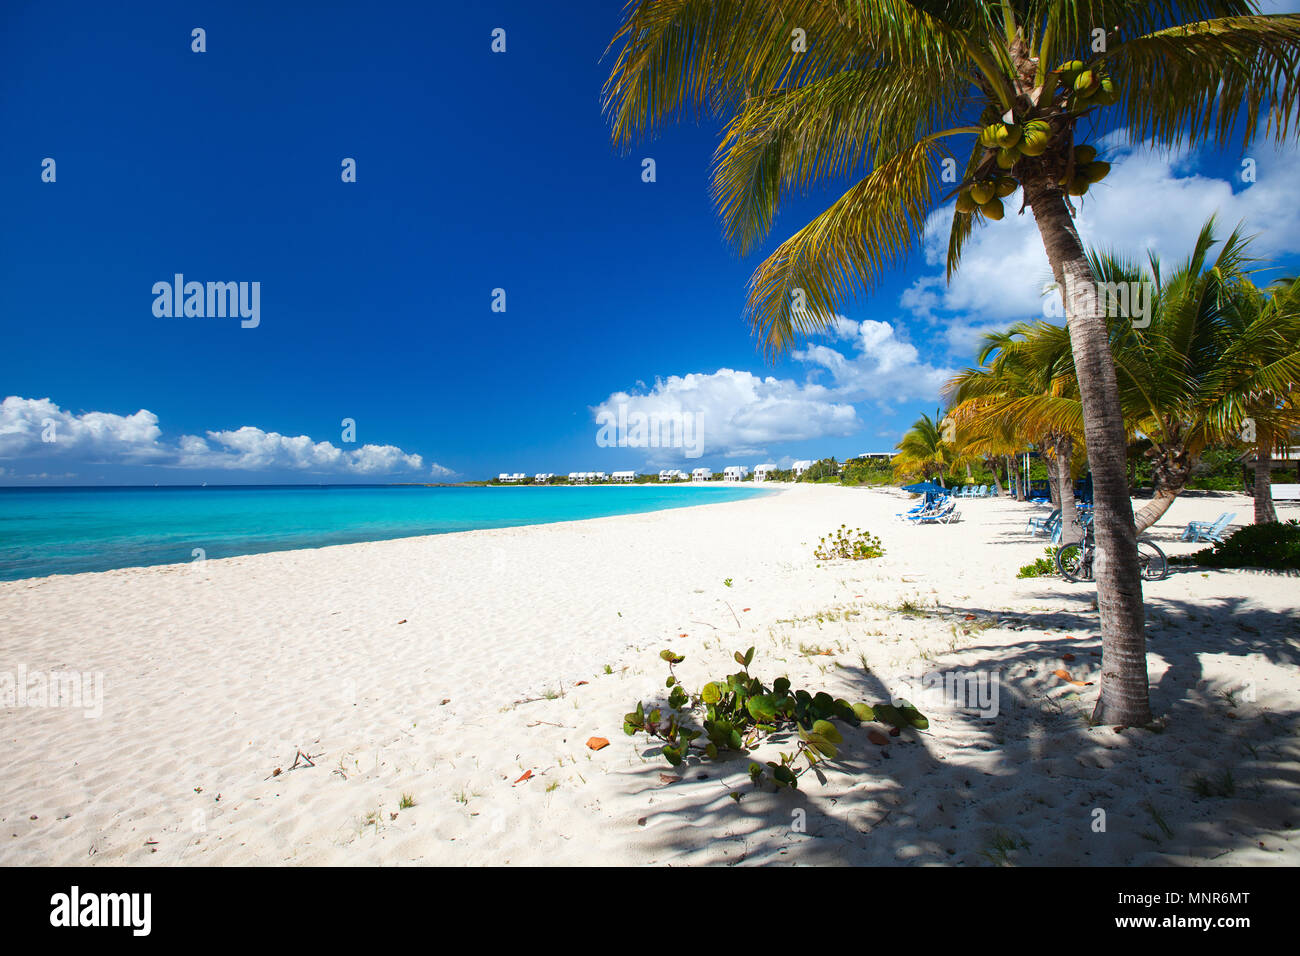 Plage des Caraïbes parfait sur l'île d'Anguilla Banque D'Images